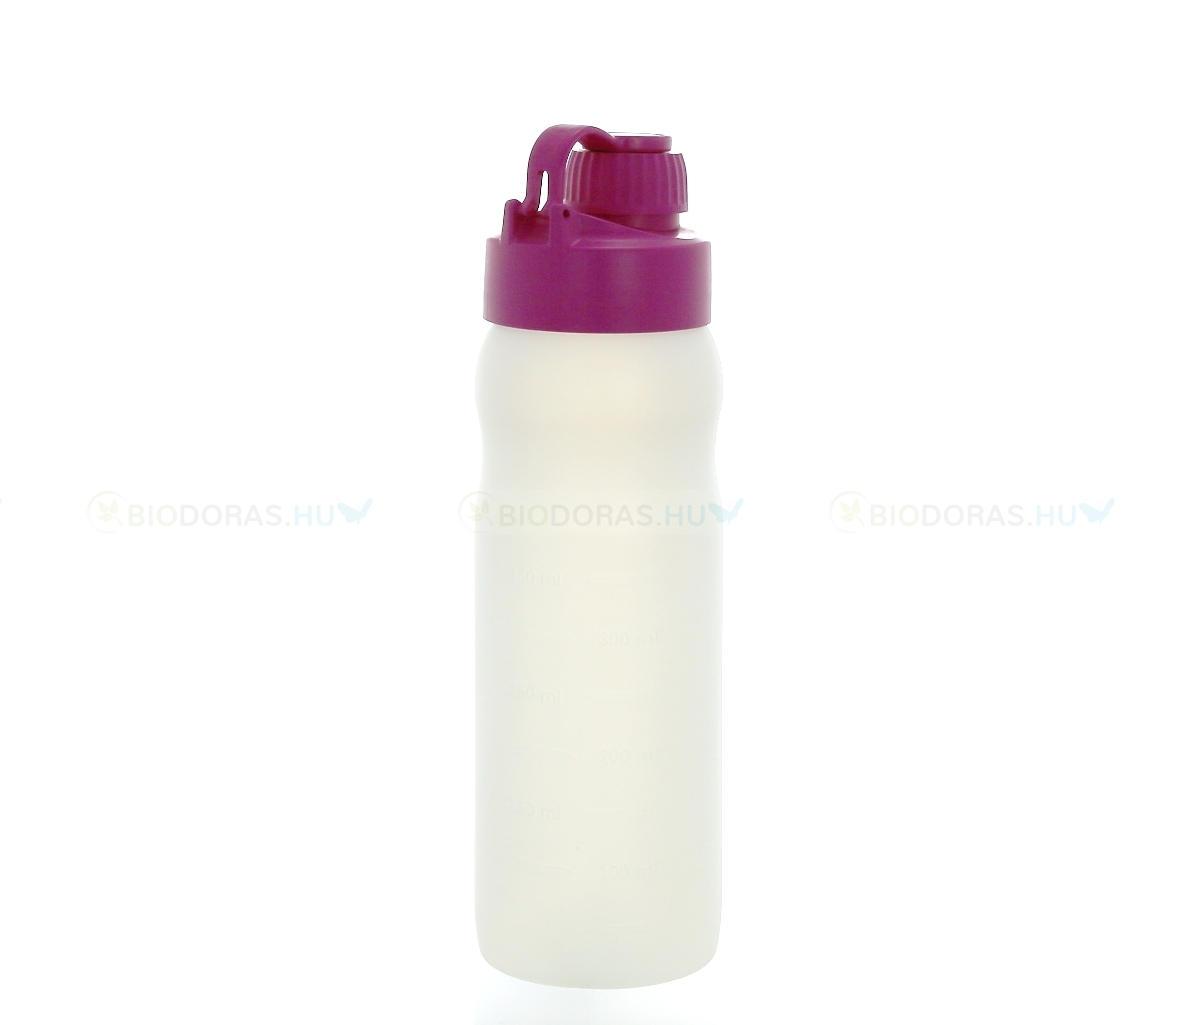 BIODORA Bioműanyag kulacs (sportpalack) visszazárható kupakkal, fehér-magenta színben - 500 ml